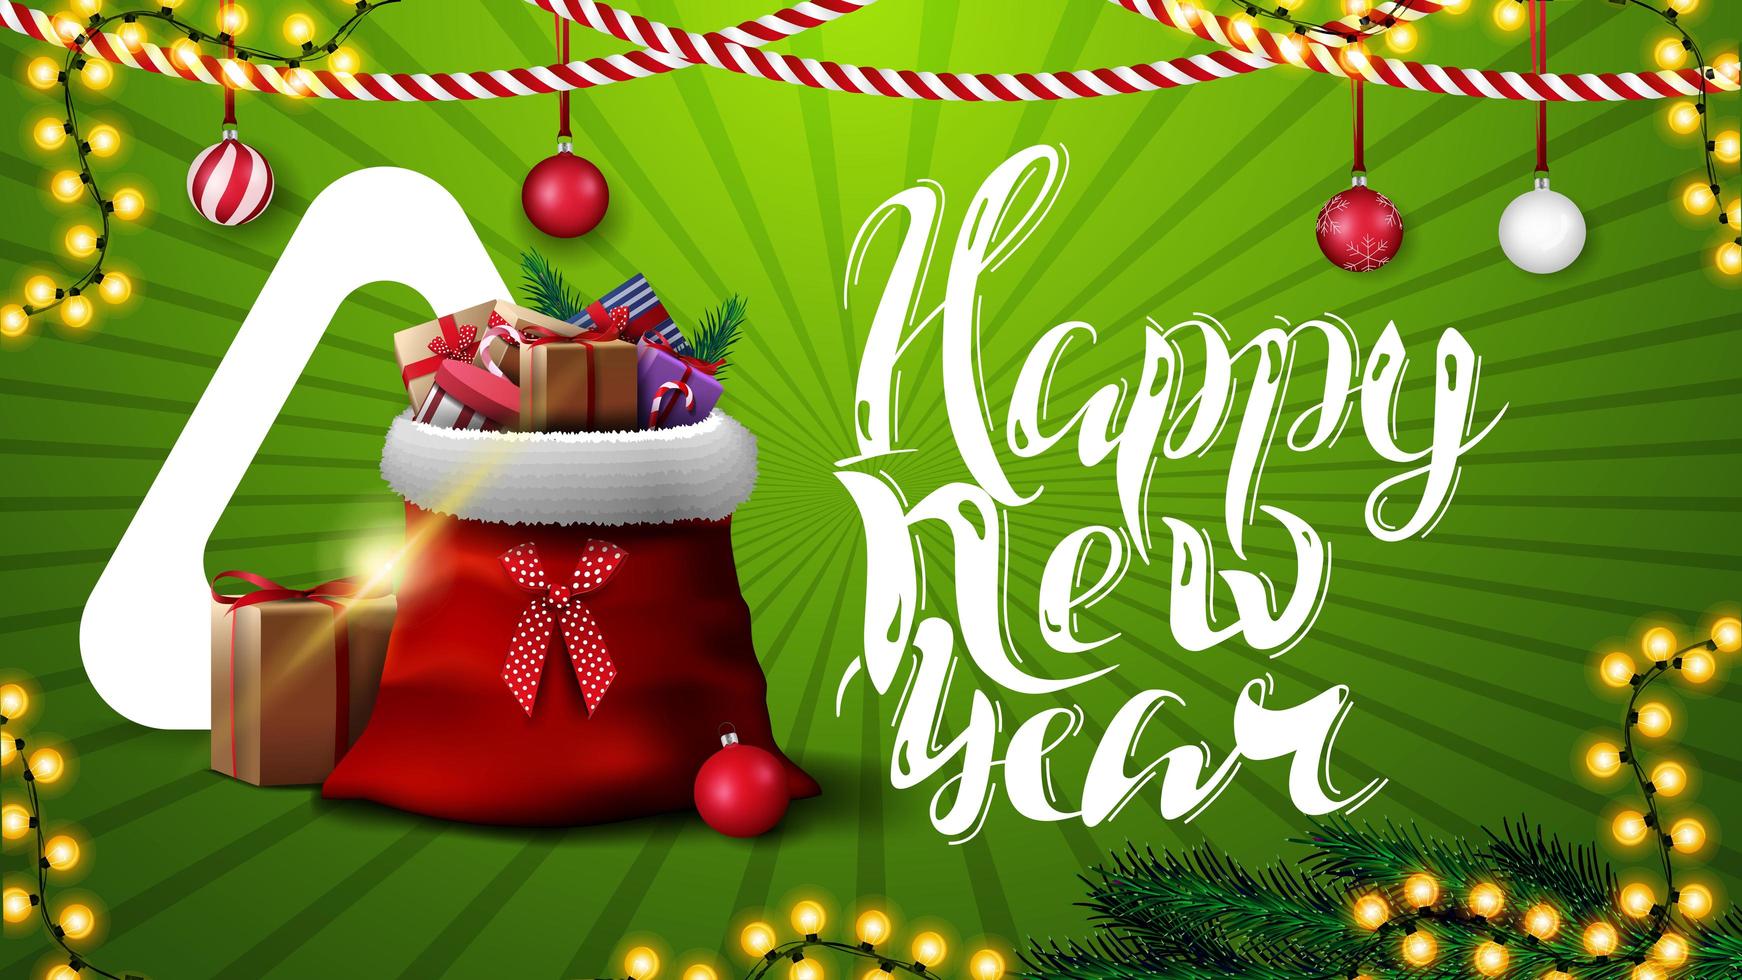 Feliz año nuevo, postal horizontal verde para sitio web con decoración navideña y bolsa de santa claus con regalos vector